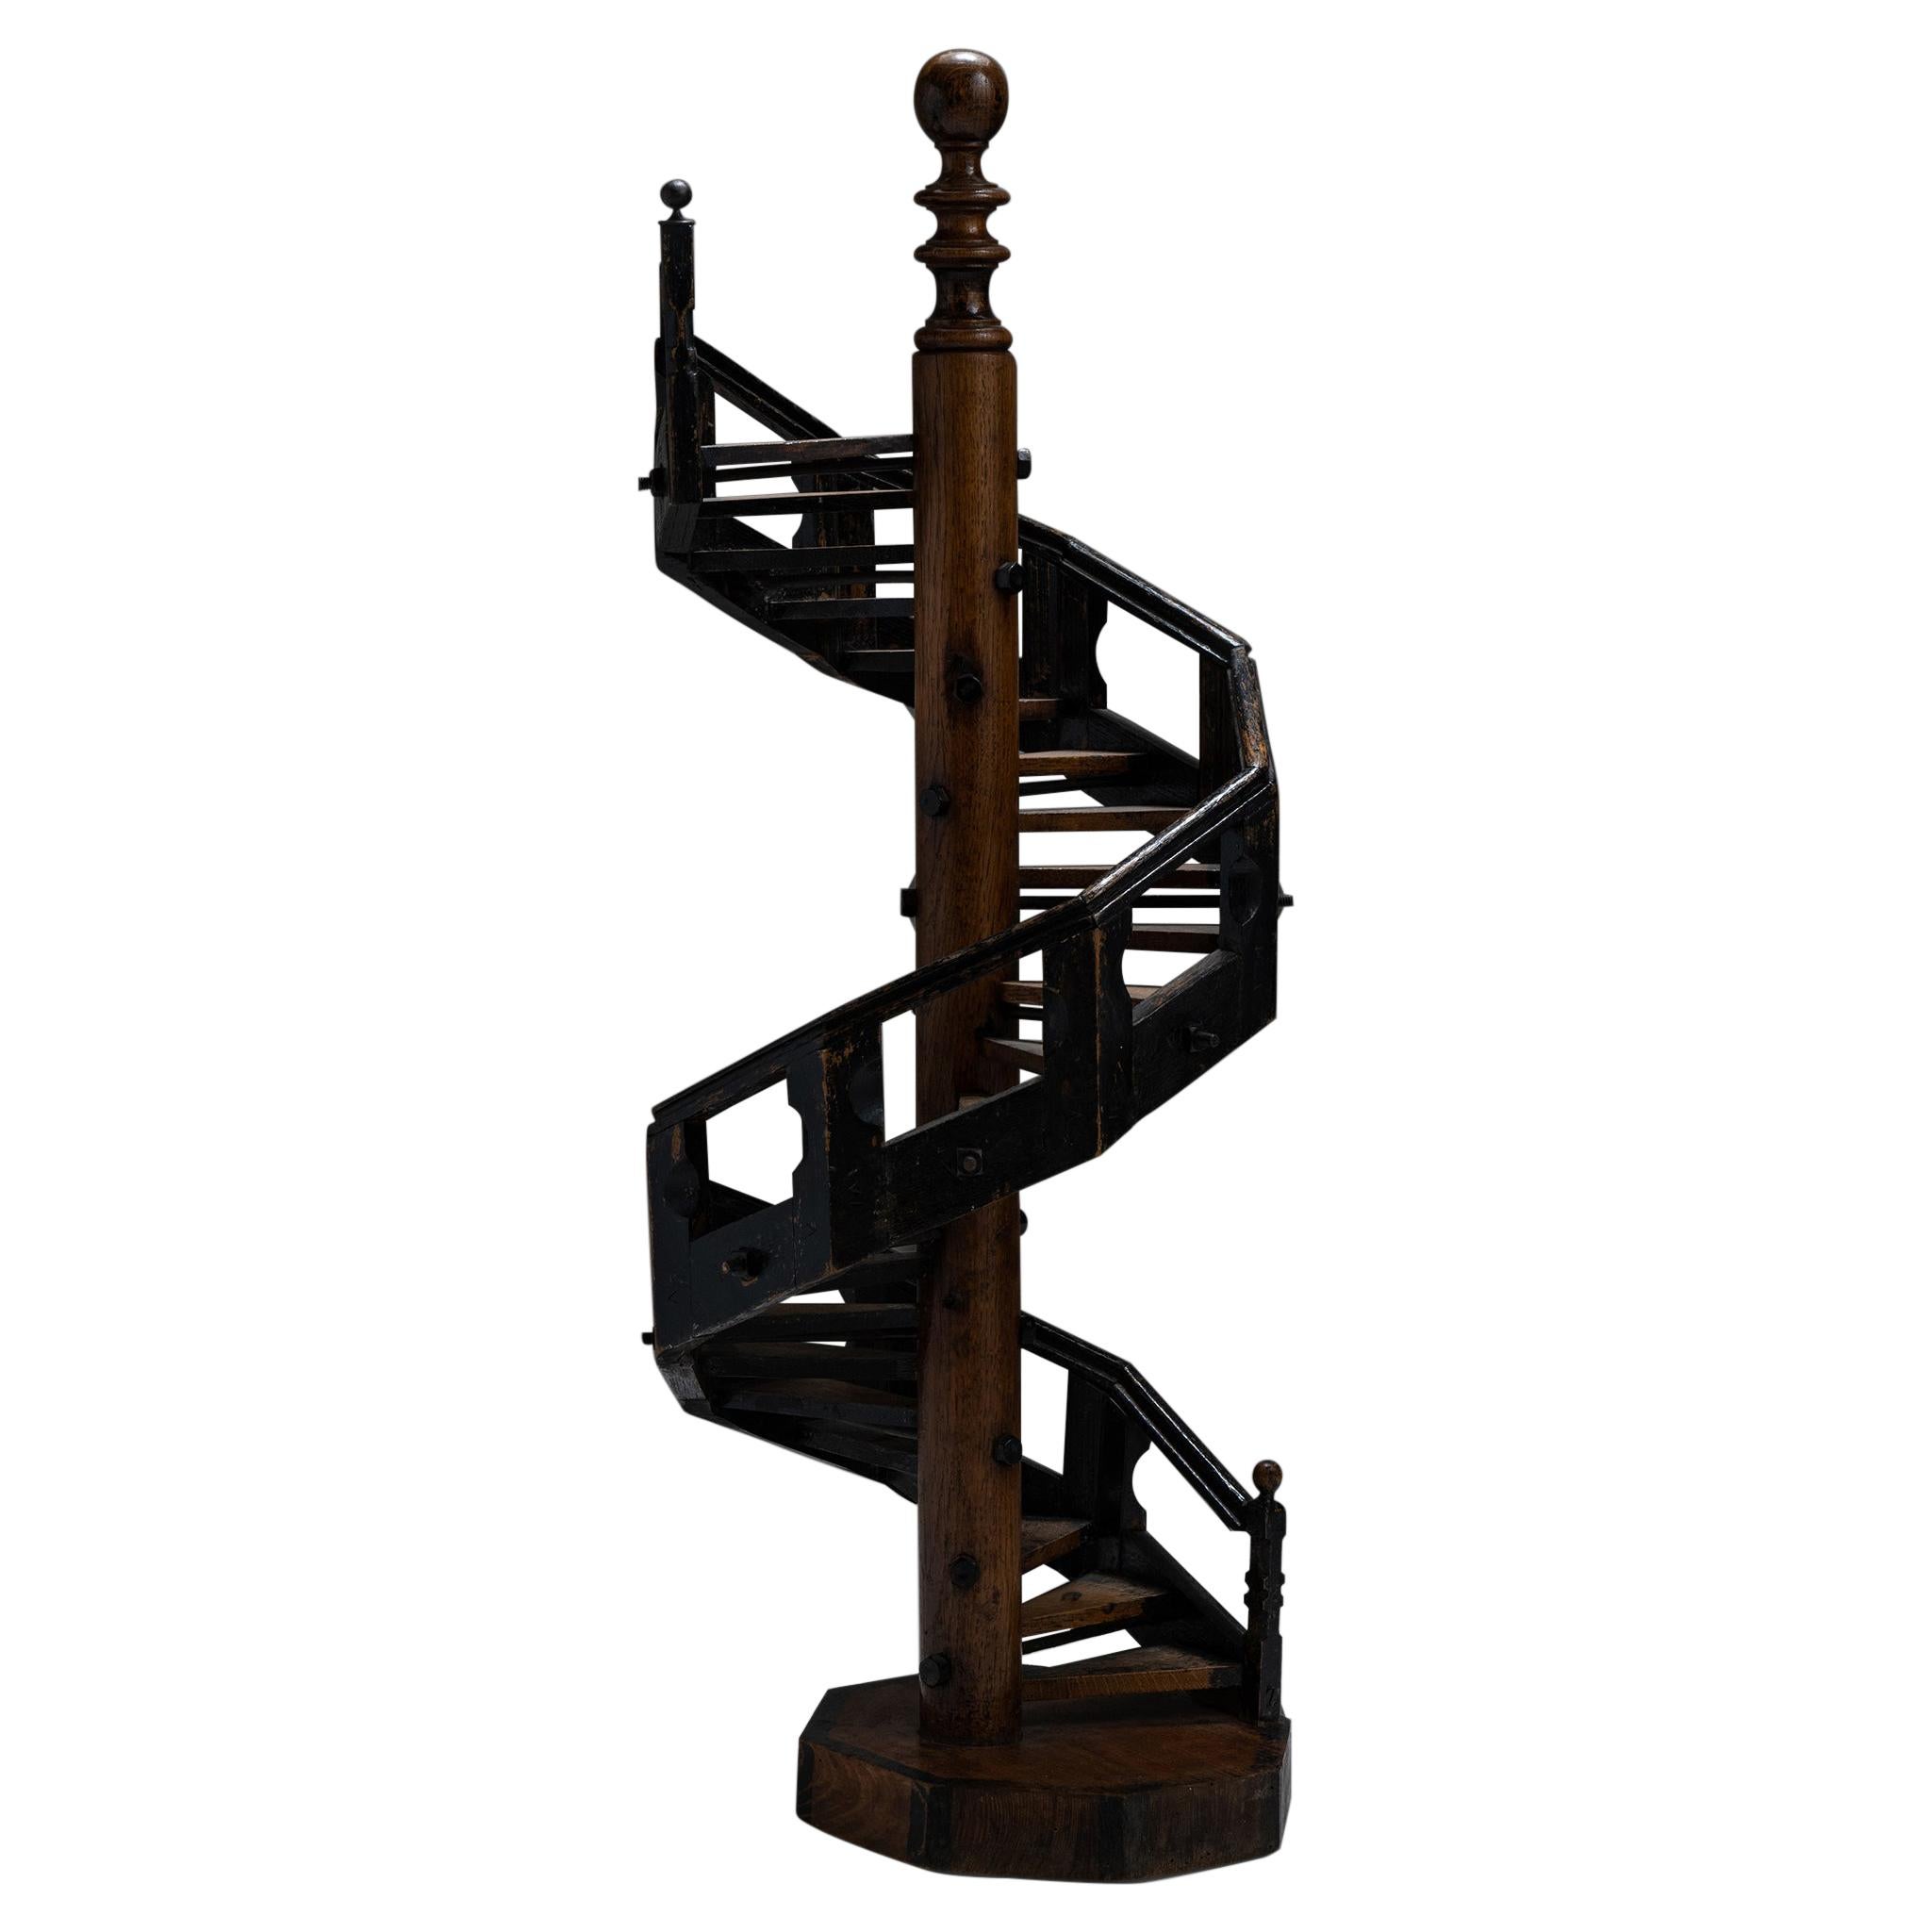 Architectural Staircase Model, England, Circa 1890